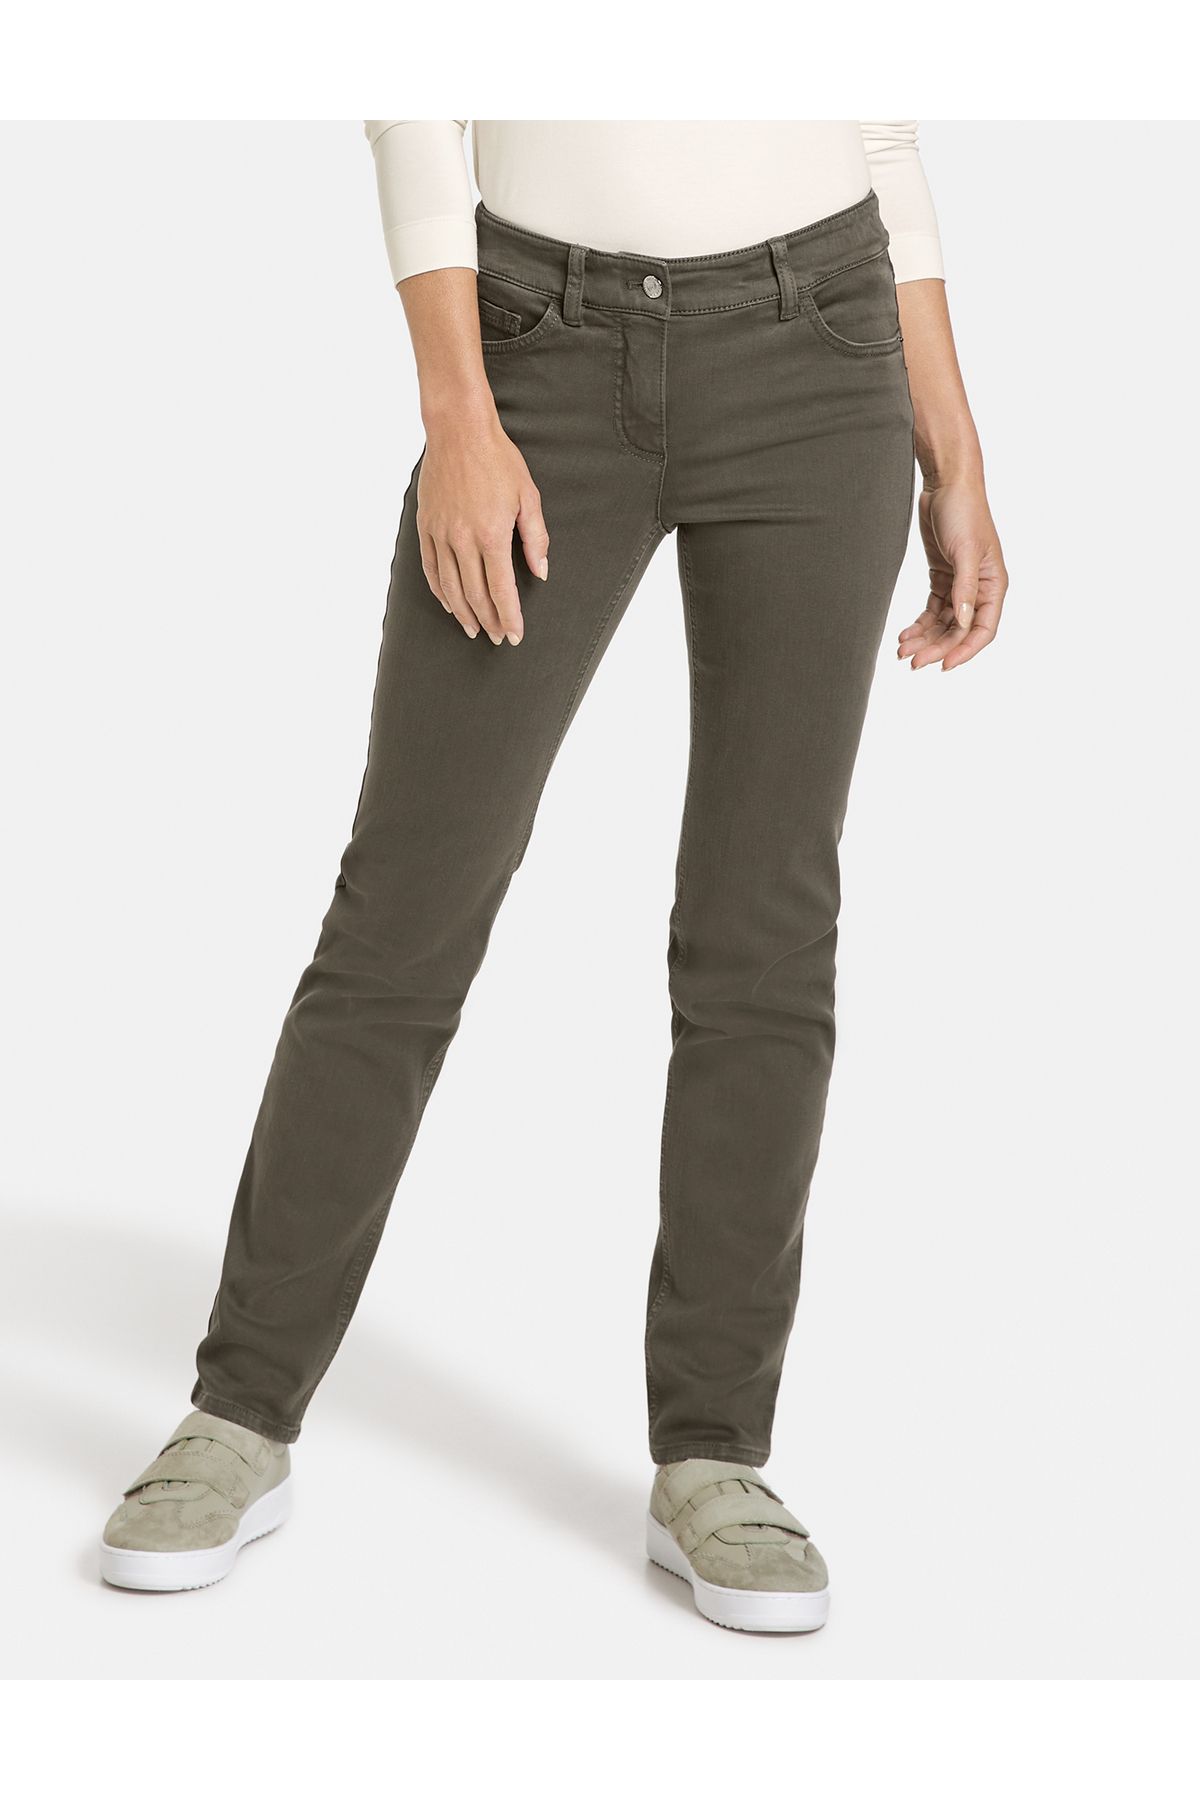 Gerry Weber Hose Jeans lang Slim Fit - Trendyol Kurzgröße Hose Best4me 5-Pocket